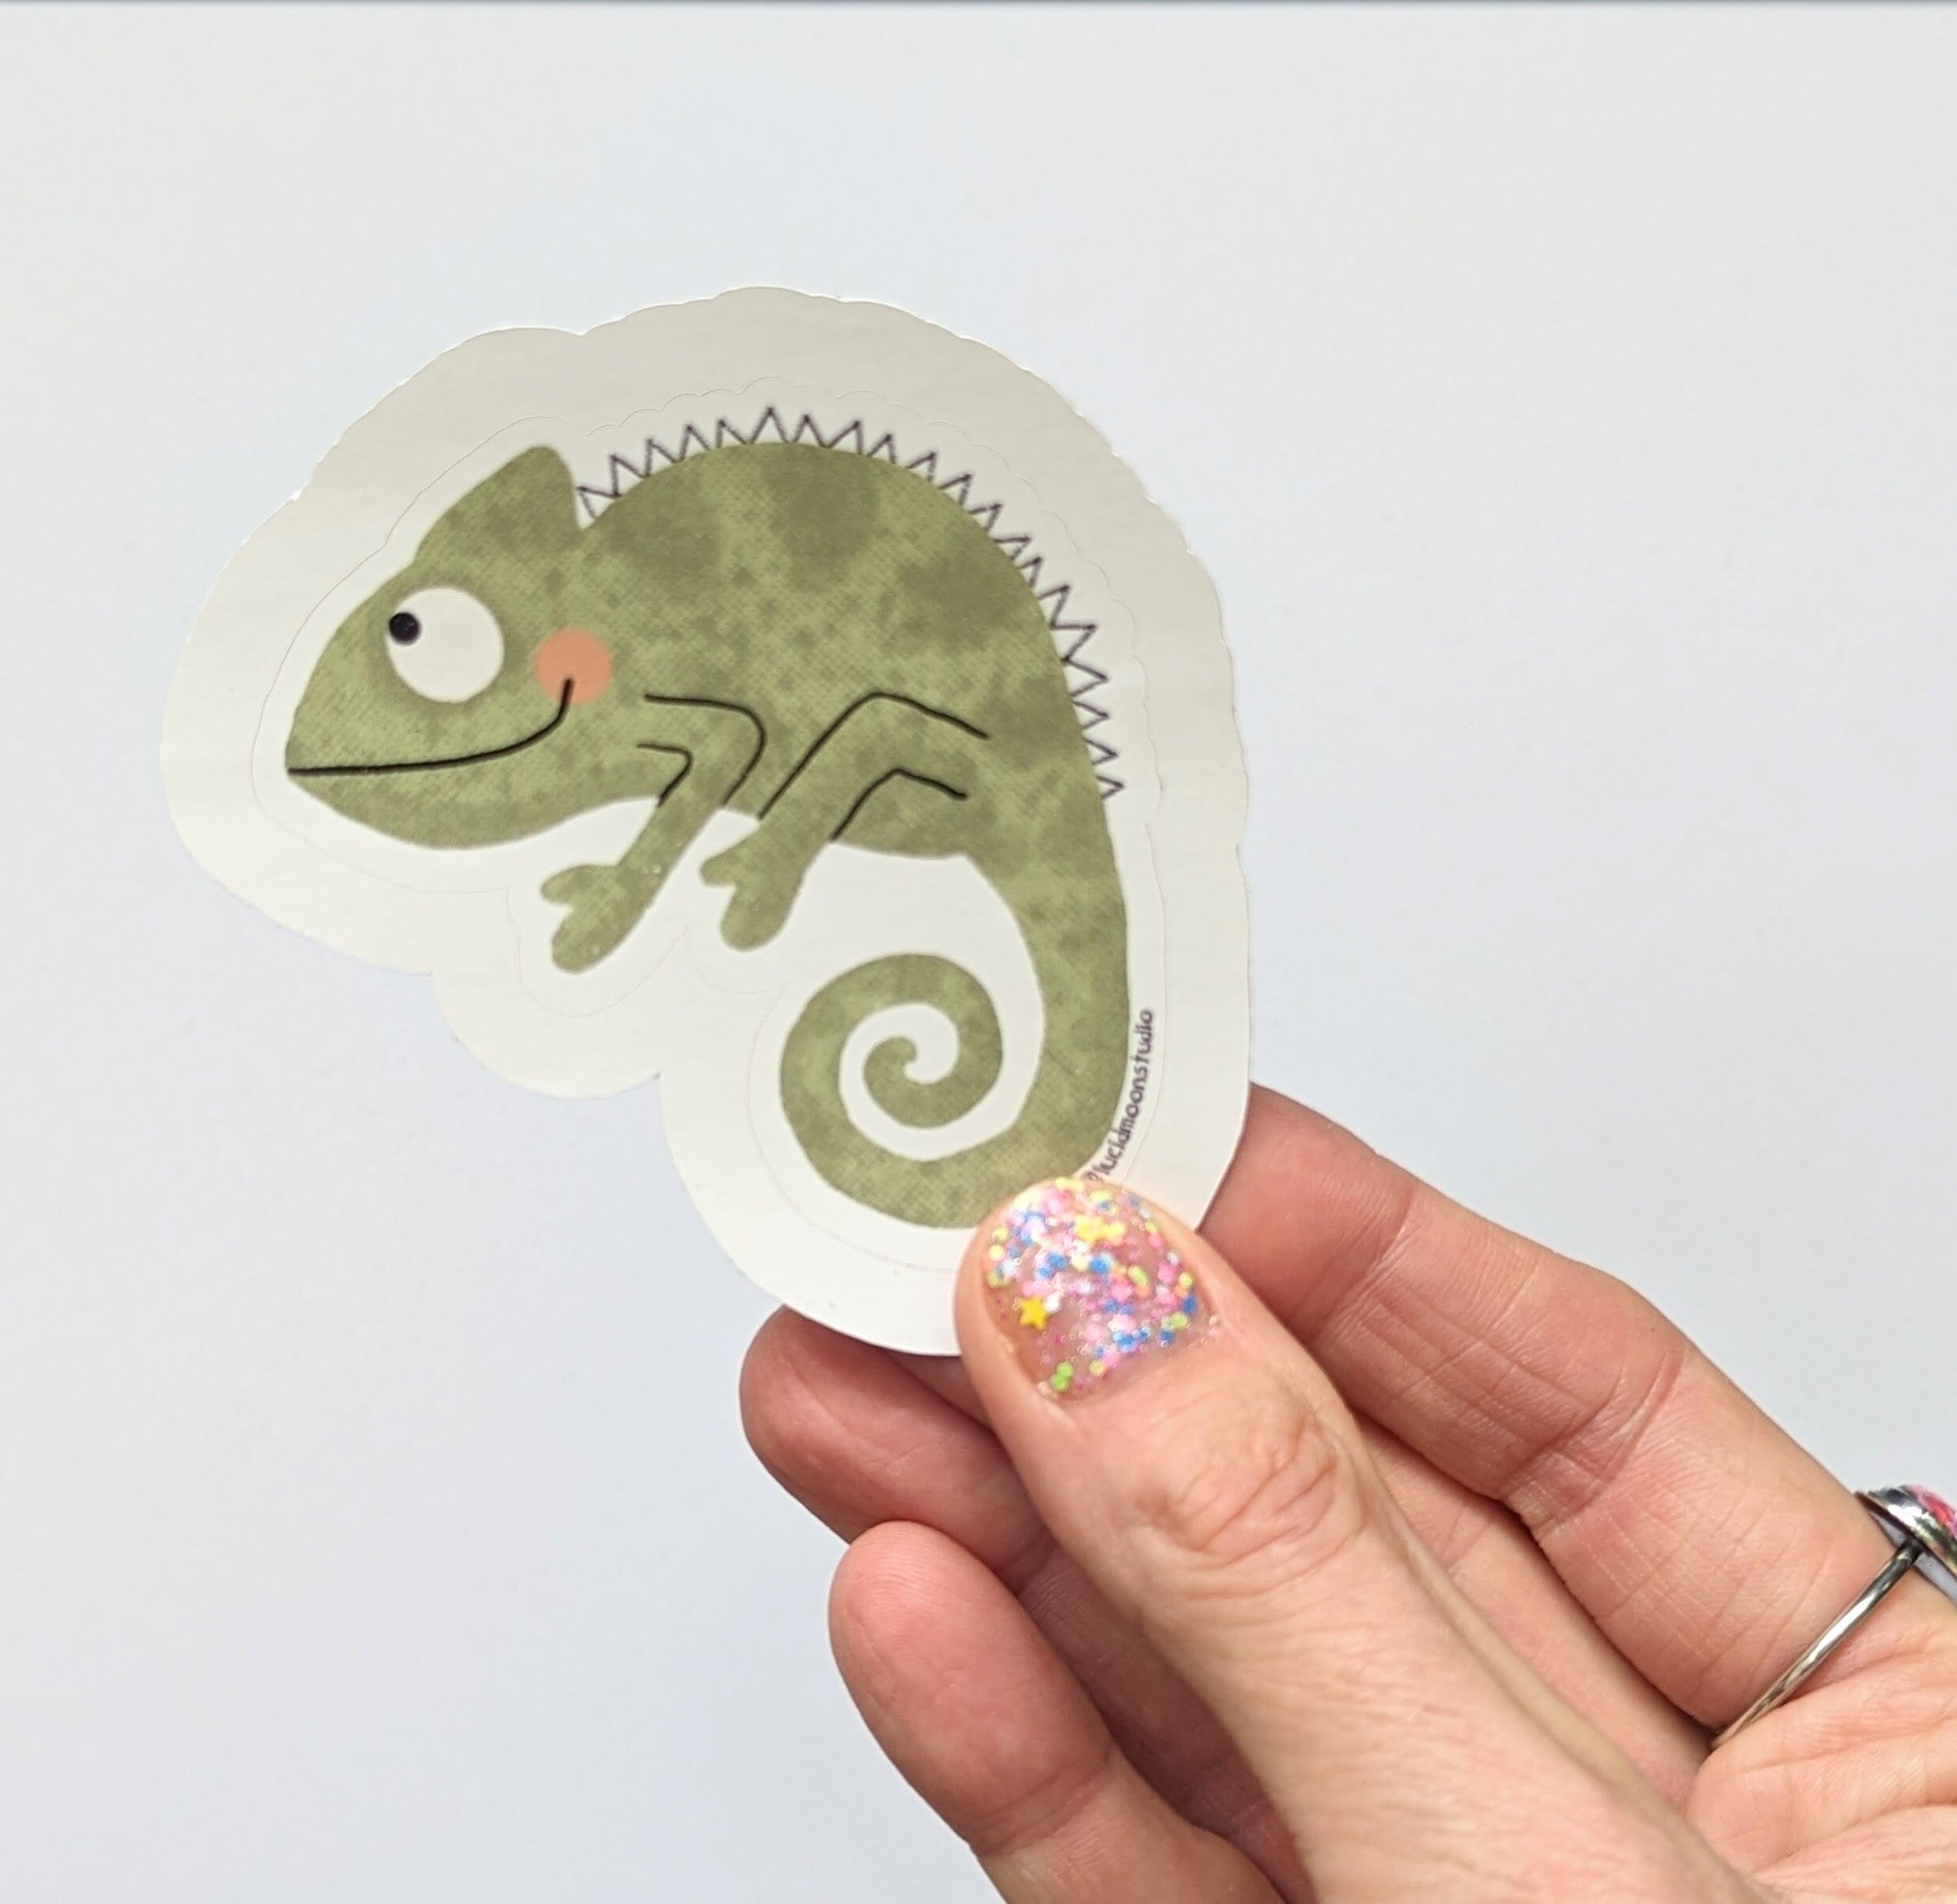 Wild Adventures Chameleon Glossy Vinyl Waterproof Sticker stickers Lucid Moon Studio 